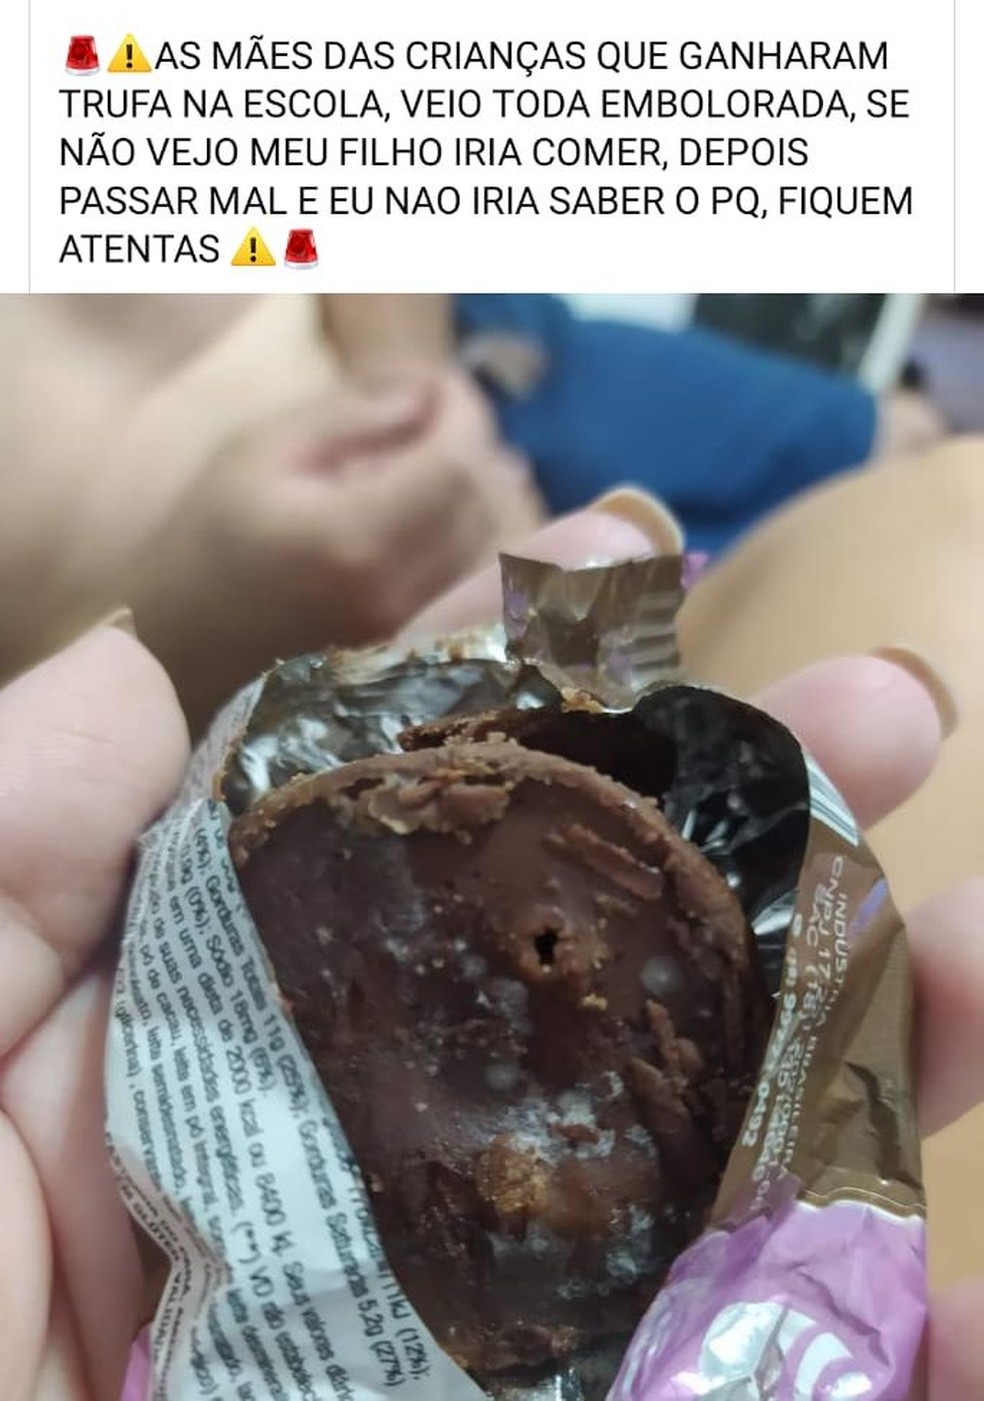 Pais denunciaram o problema com os chocolates nas redes sociais em Duartina  — Foto: Facebook/ Reprodução